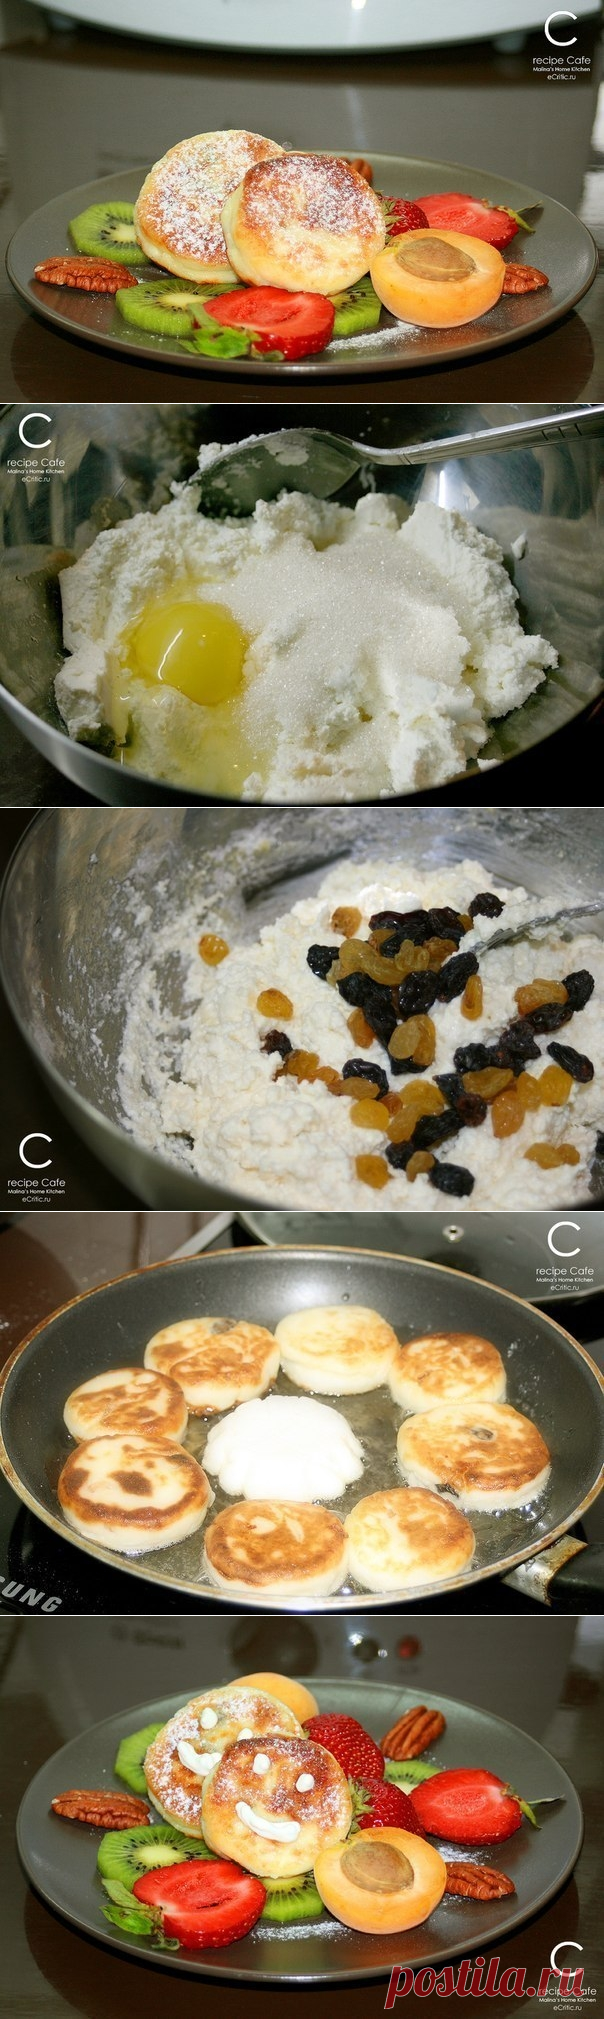 Как приготовить сырники с фруктами - рецепт, ингредиенты и фотографии